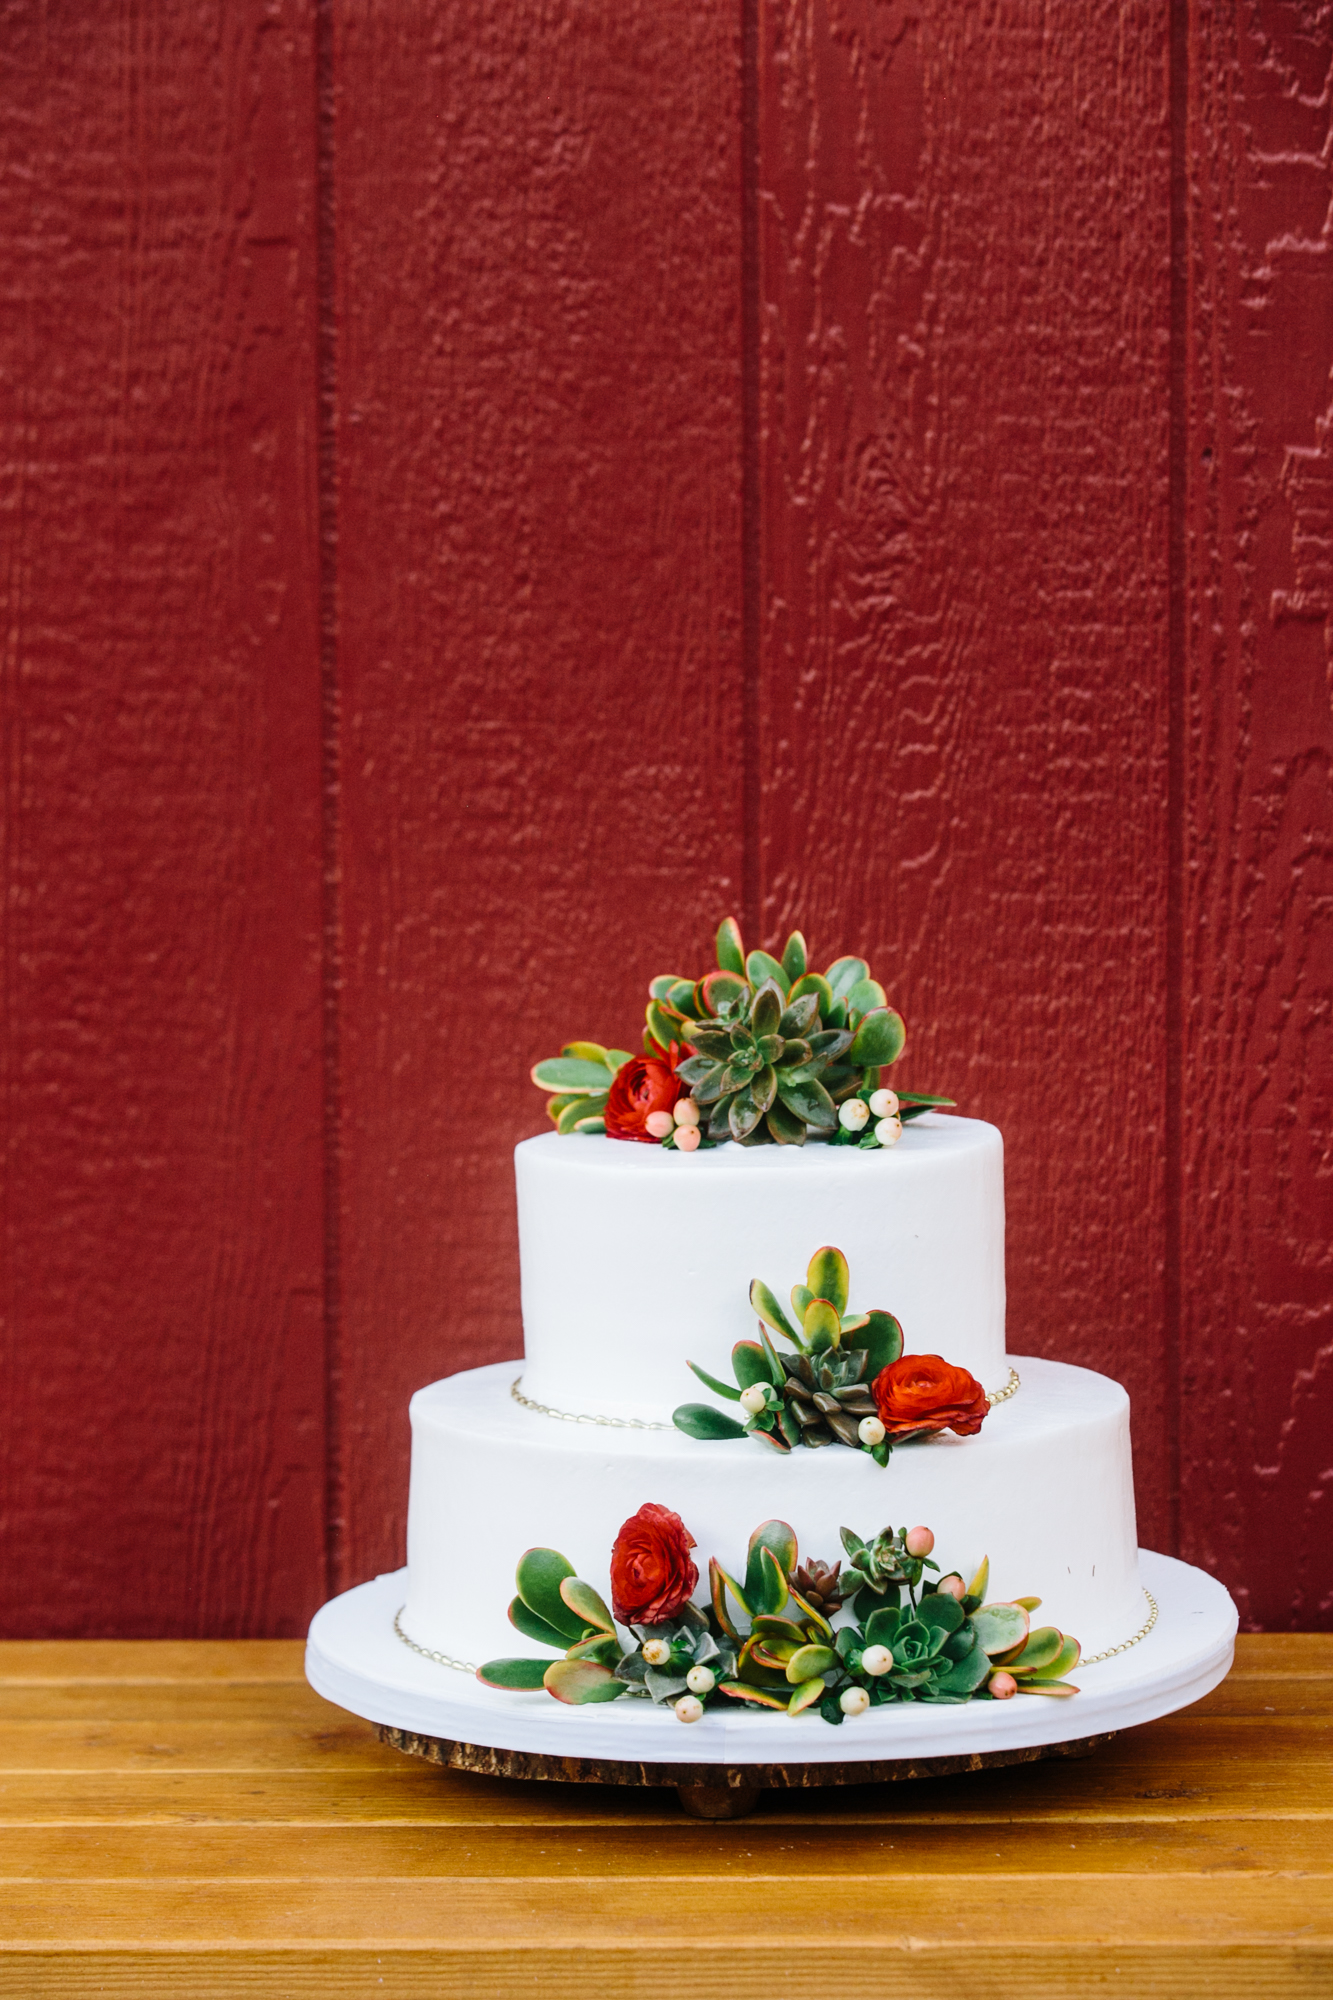 Reptacular Ranch wedding cake detail